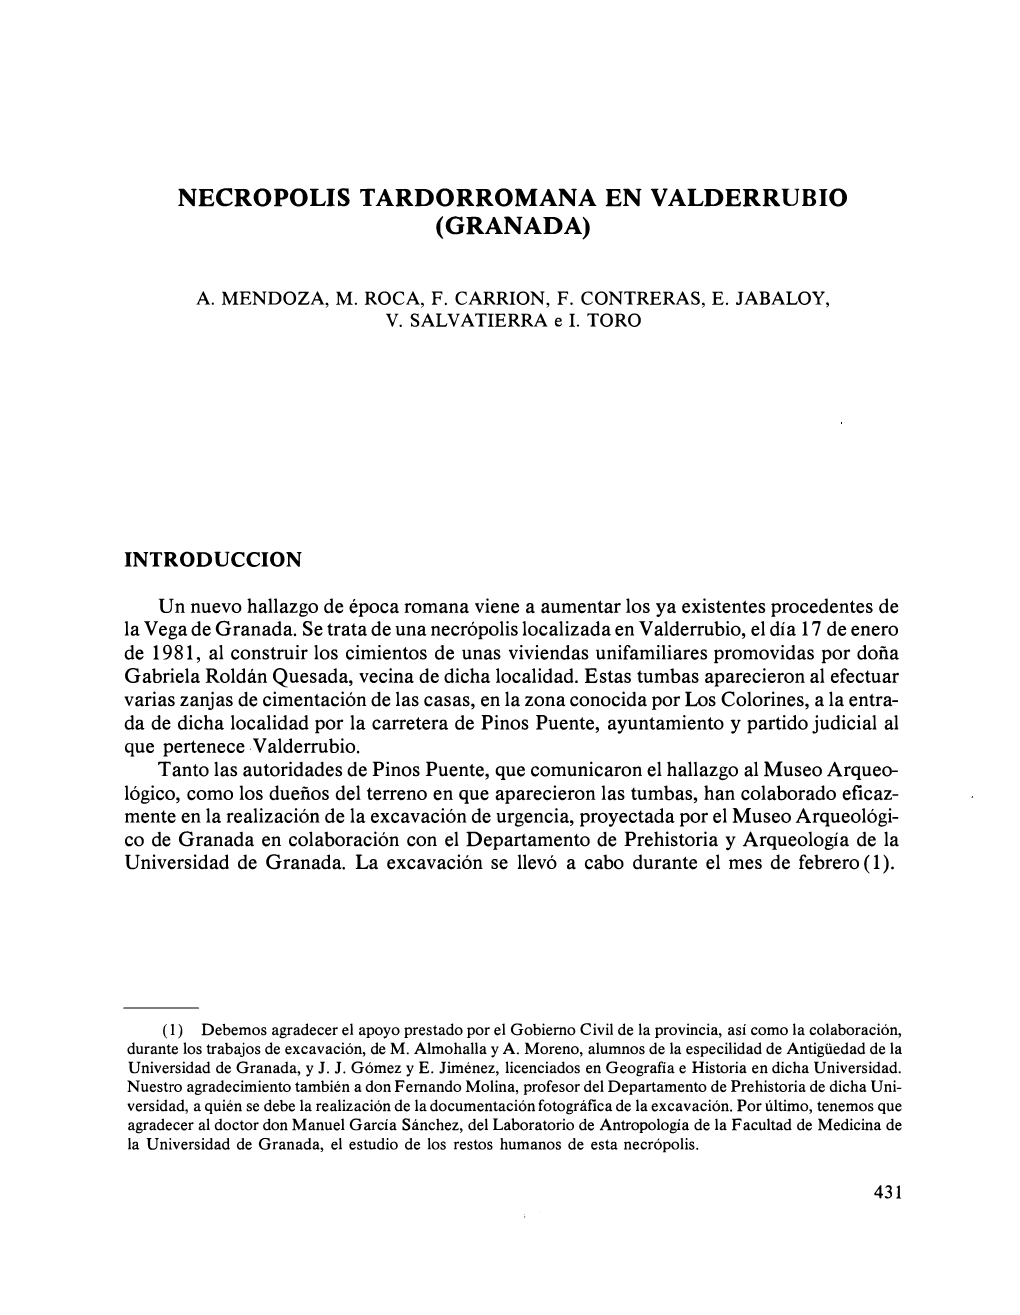 NECROPOLIS TARDORROMANA EN VALDERRUBIO (GRANADA) Un